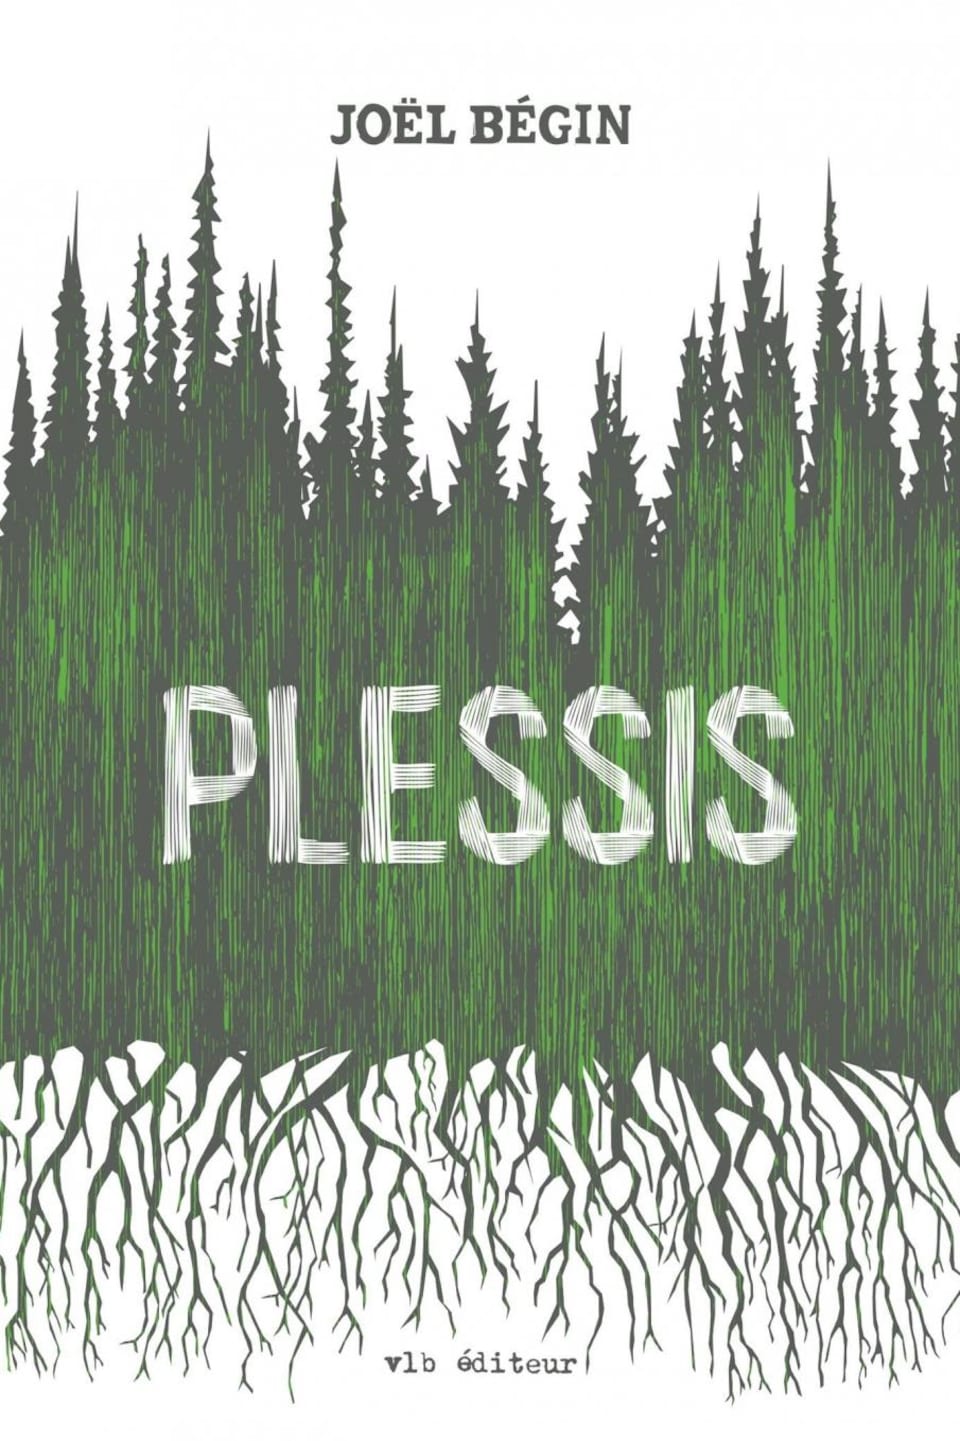 La couverture du livre Plessis, de Joël Bégin, dans les tons de vert.